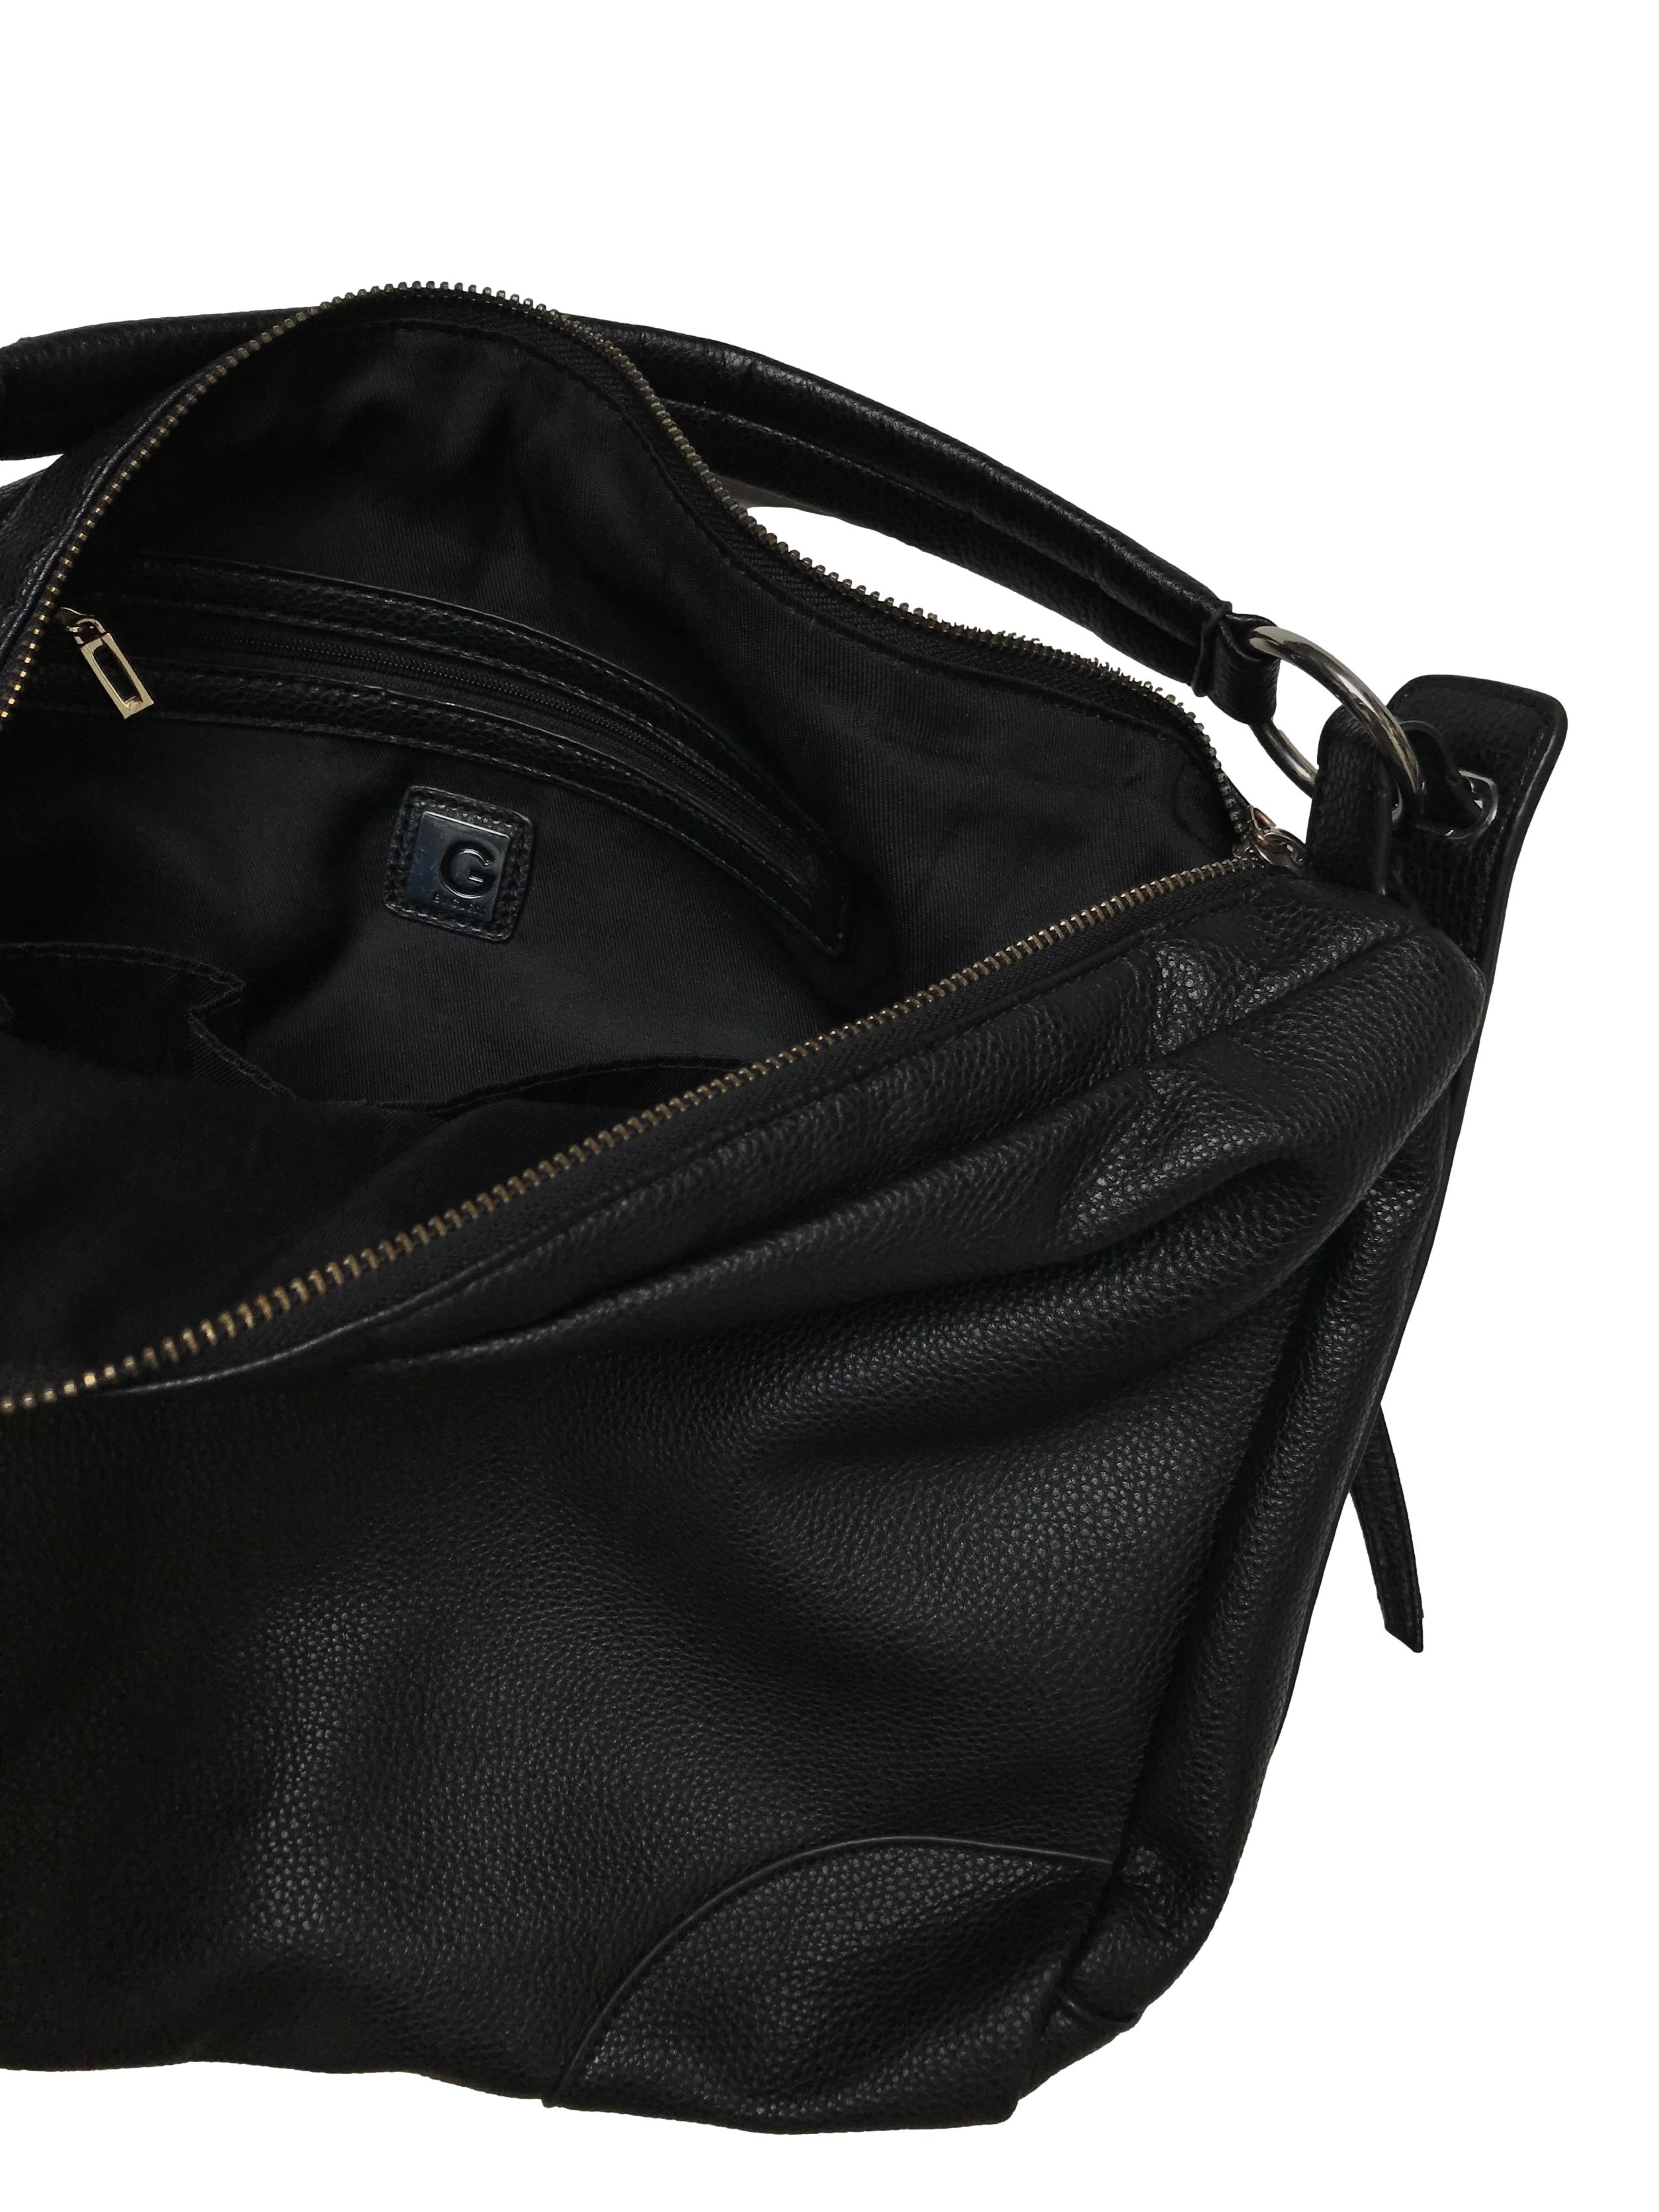 Bolso G by Guess de cuerina negra, gran compartimento con cierre y bolsillos internos, zippers con jalador de cuerina (le falta uno). Estado 9/10. Medidas 37x29x10cm